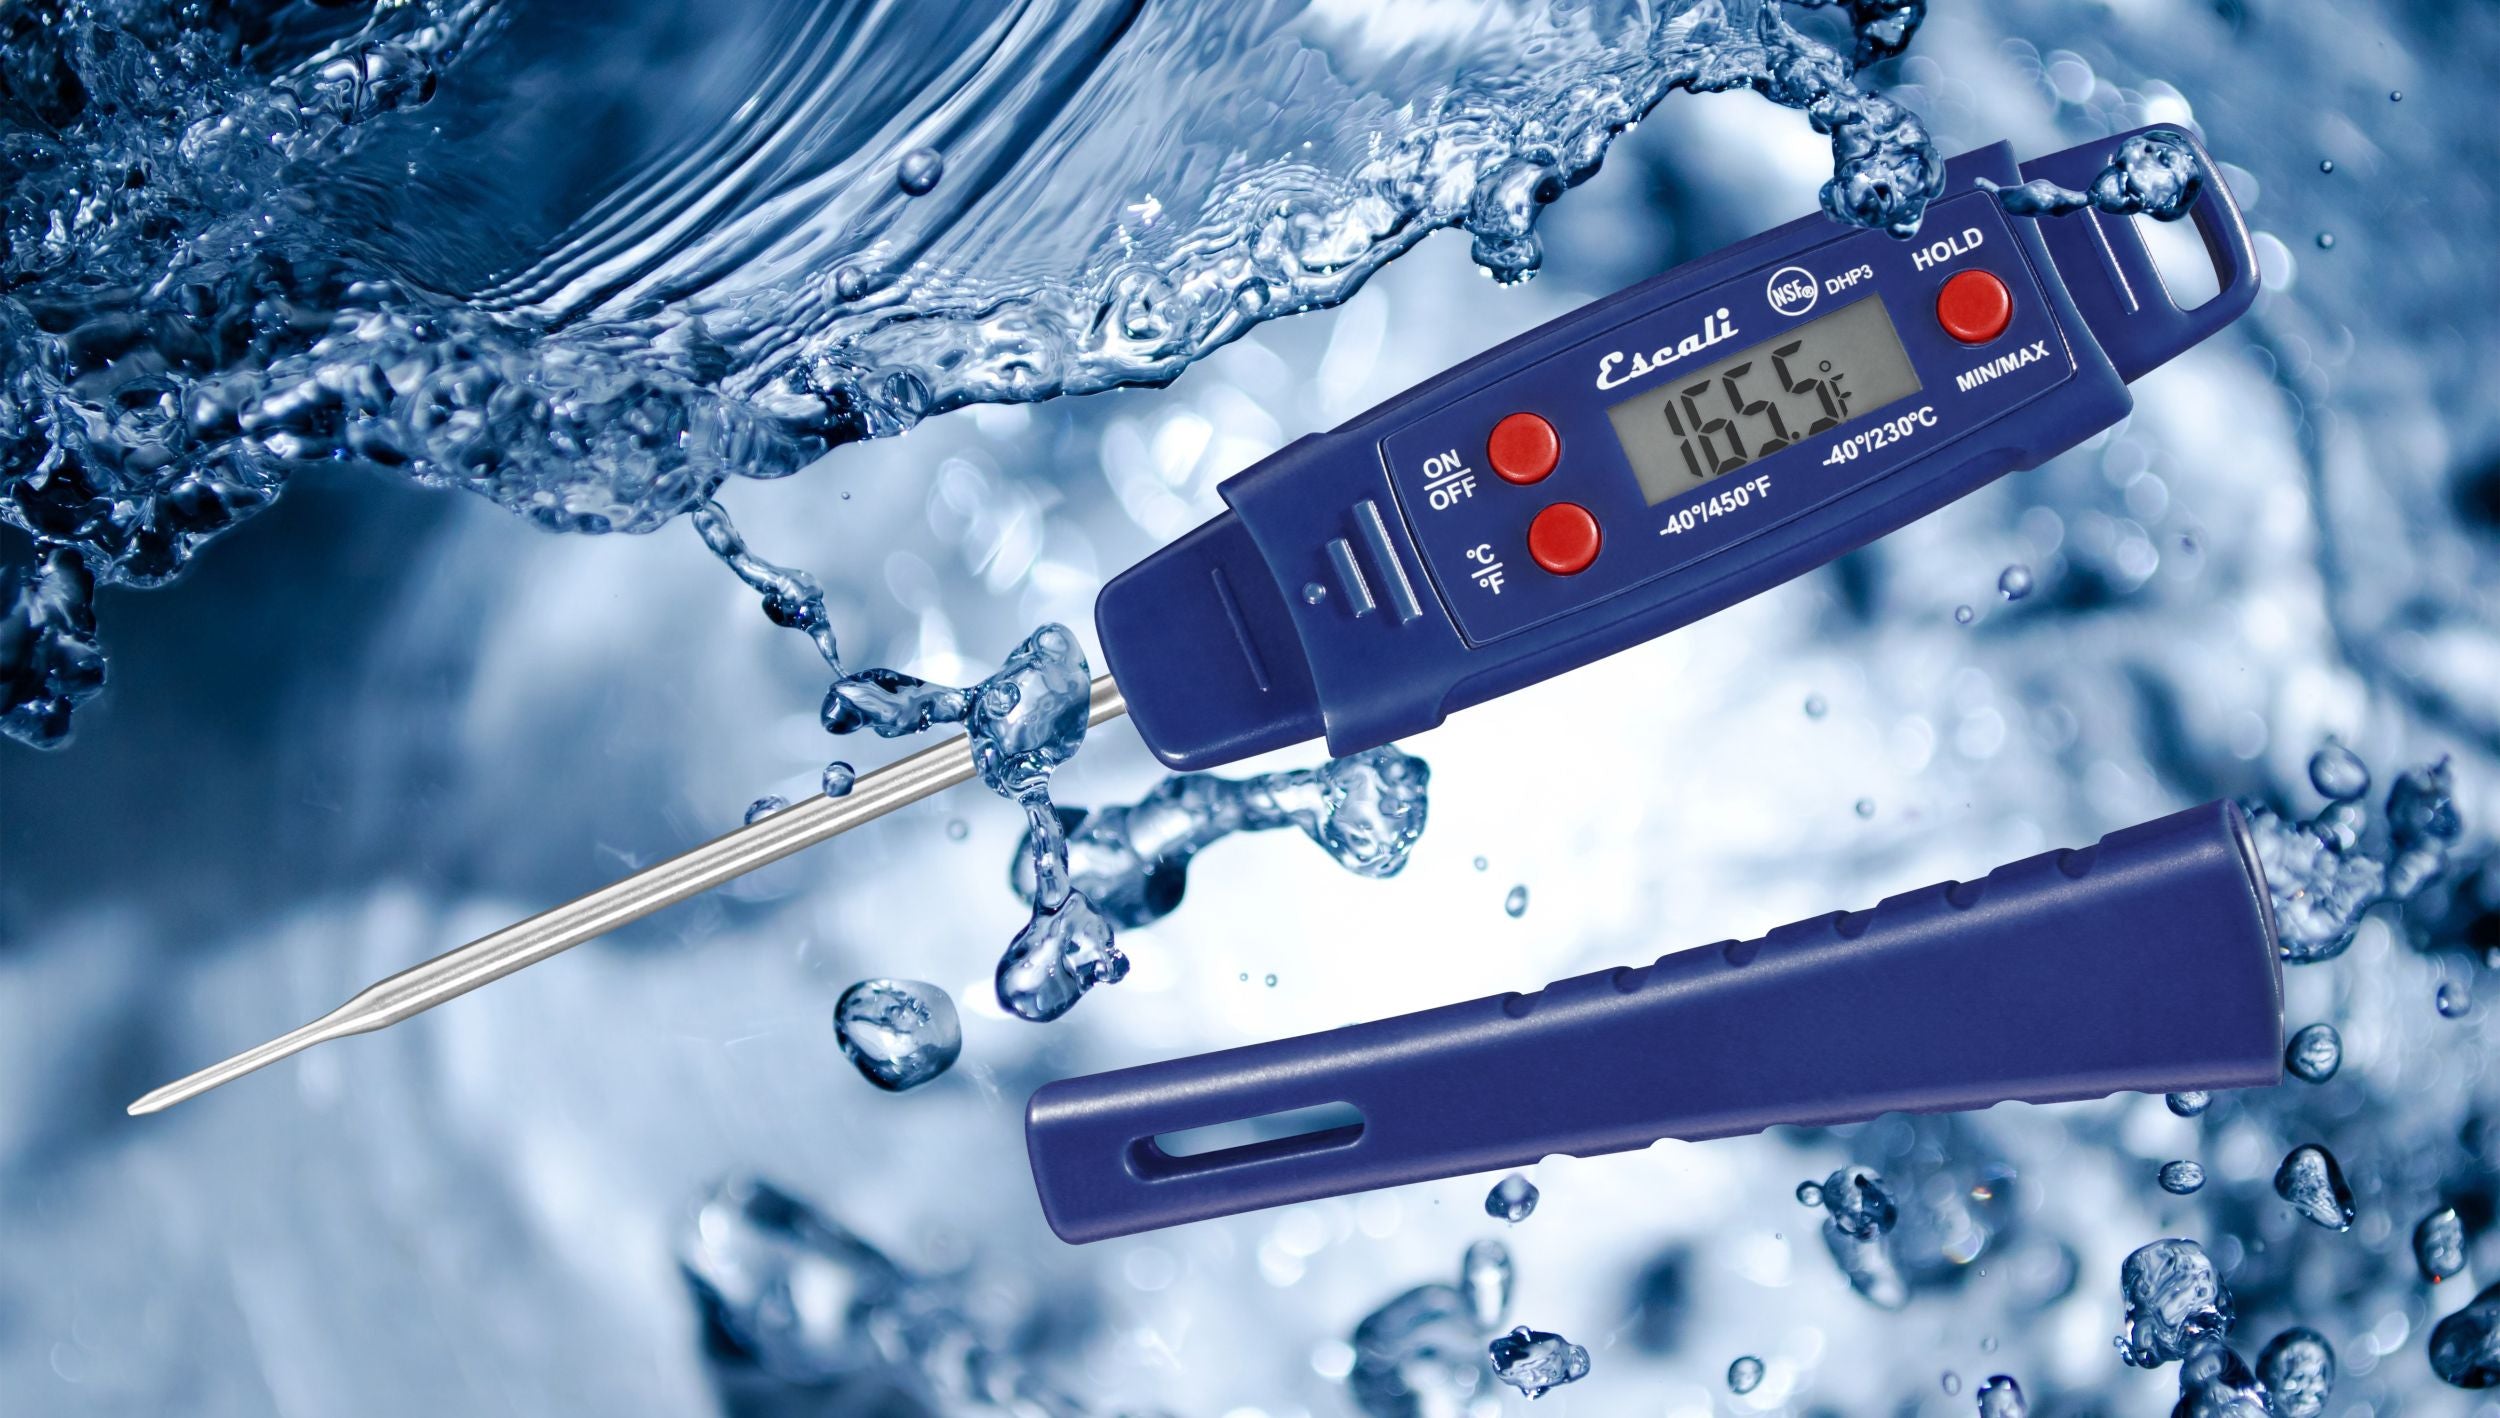 Waterproof Digital Thermometer